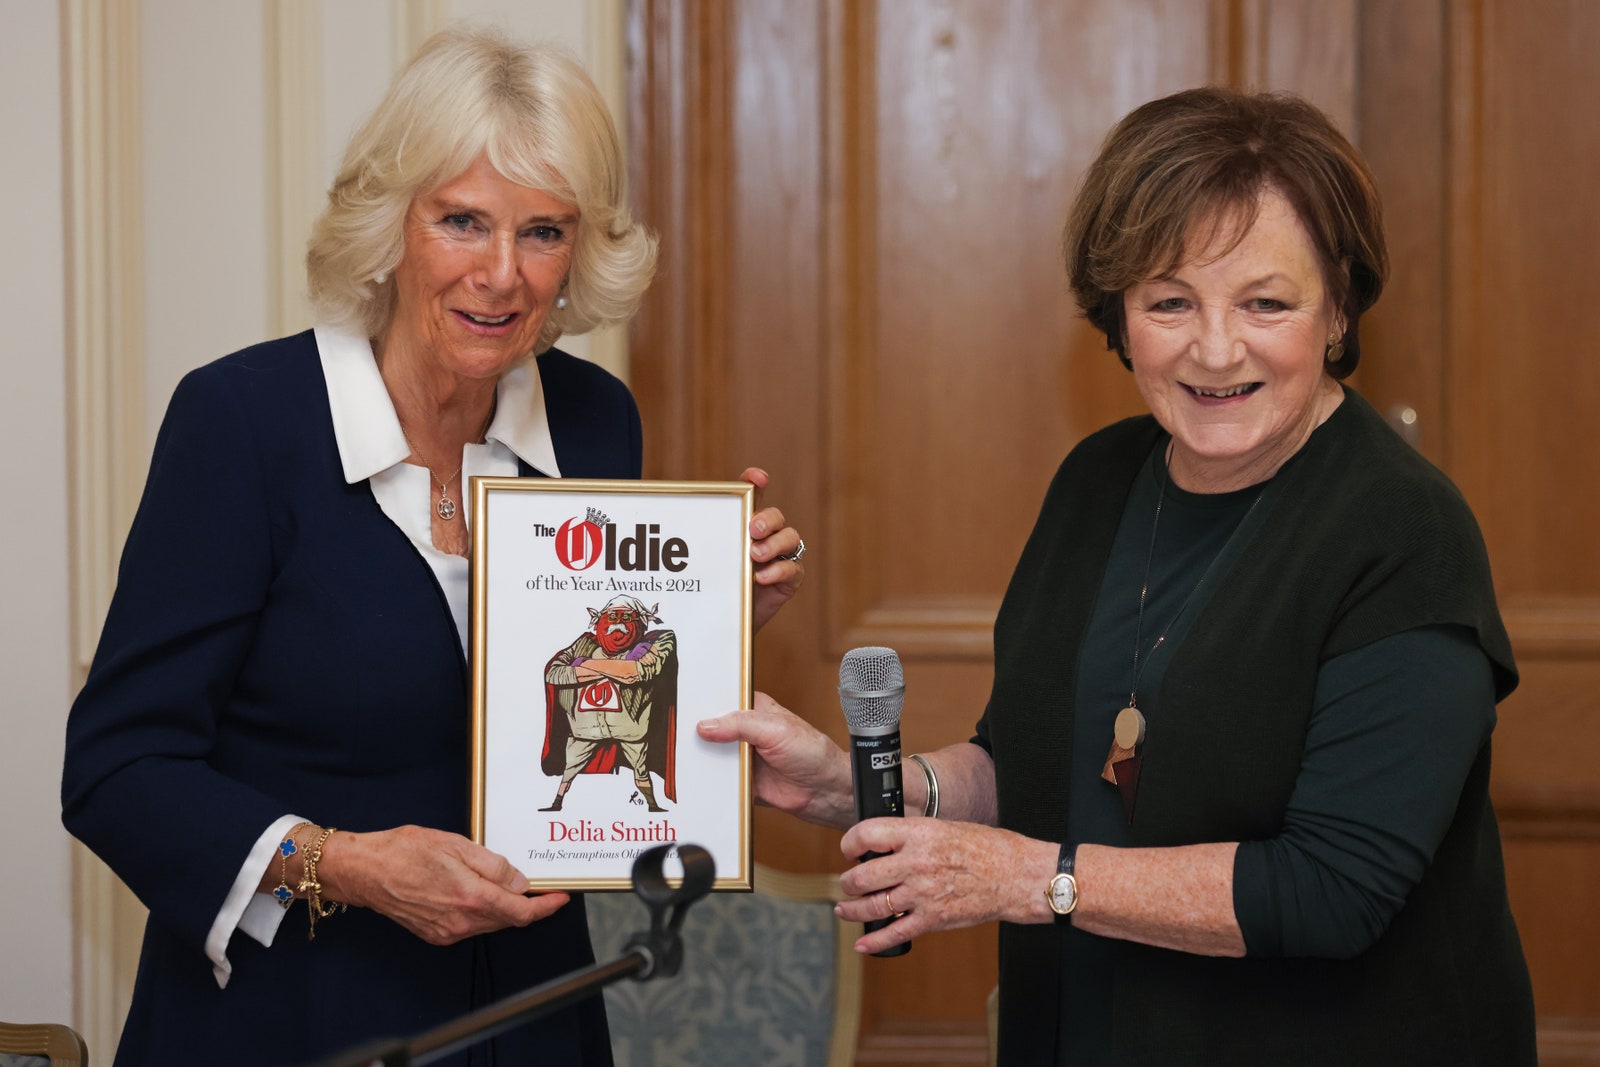 Герцогиня Камилла вручает премию Oldie of the Year автору кулинарных бестселлеров Делии Смит 19 октября 2021 год